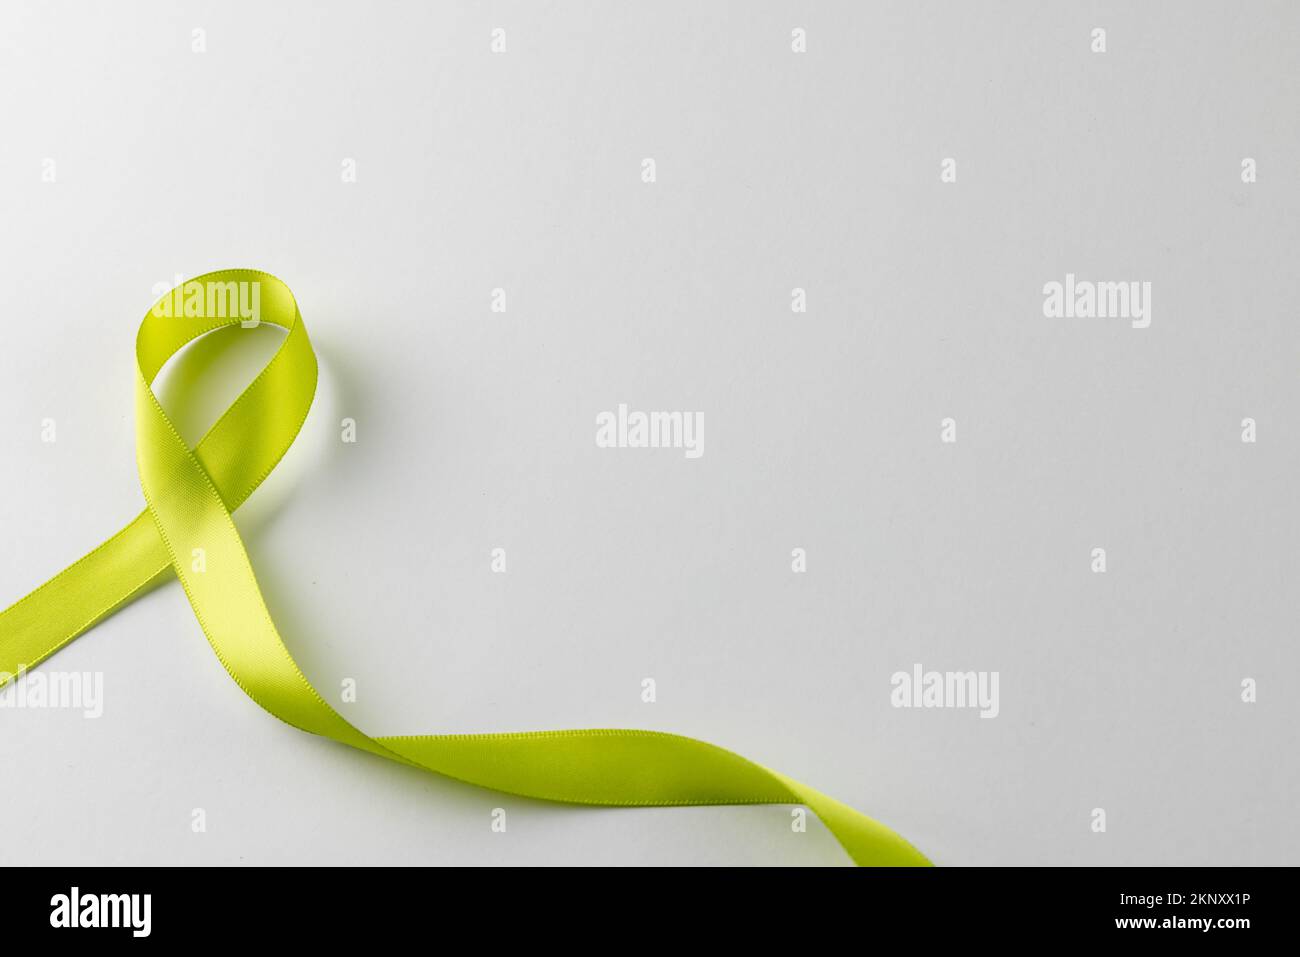 Composition d'un ruban vert clair standard de sensibilisation à la santé, sur fond blanc avec espace de copie Banque D'Images